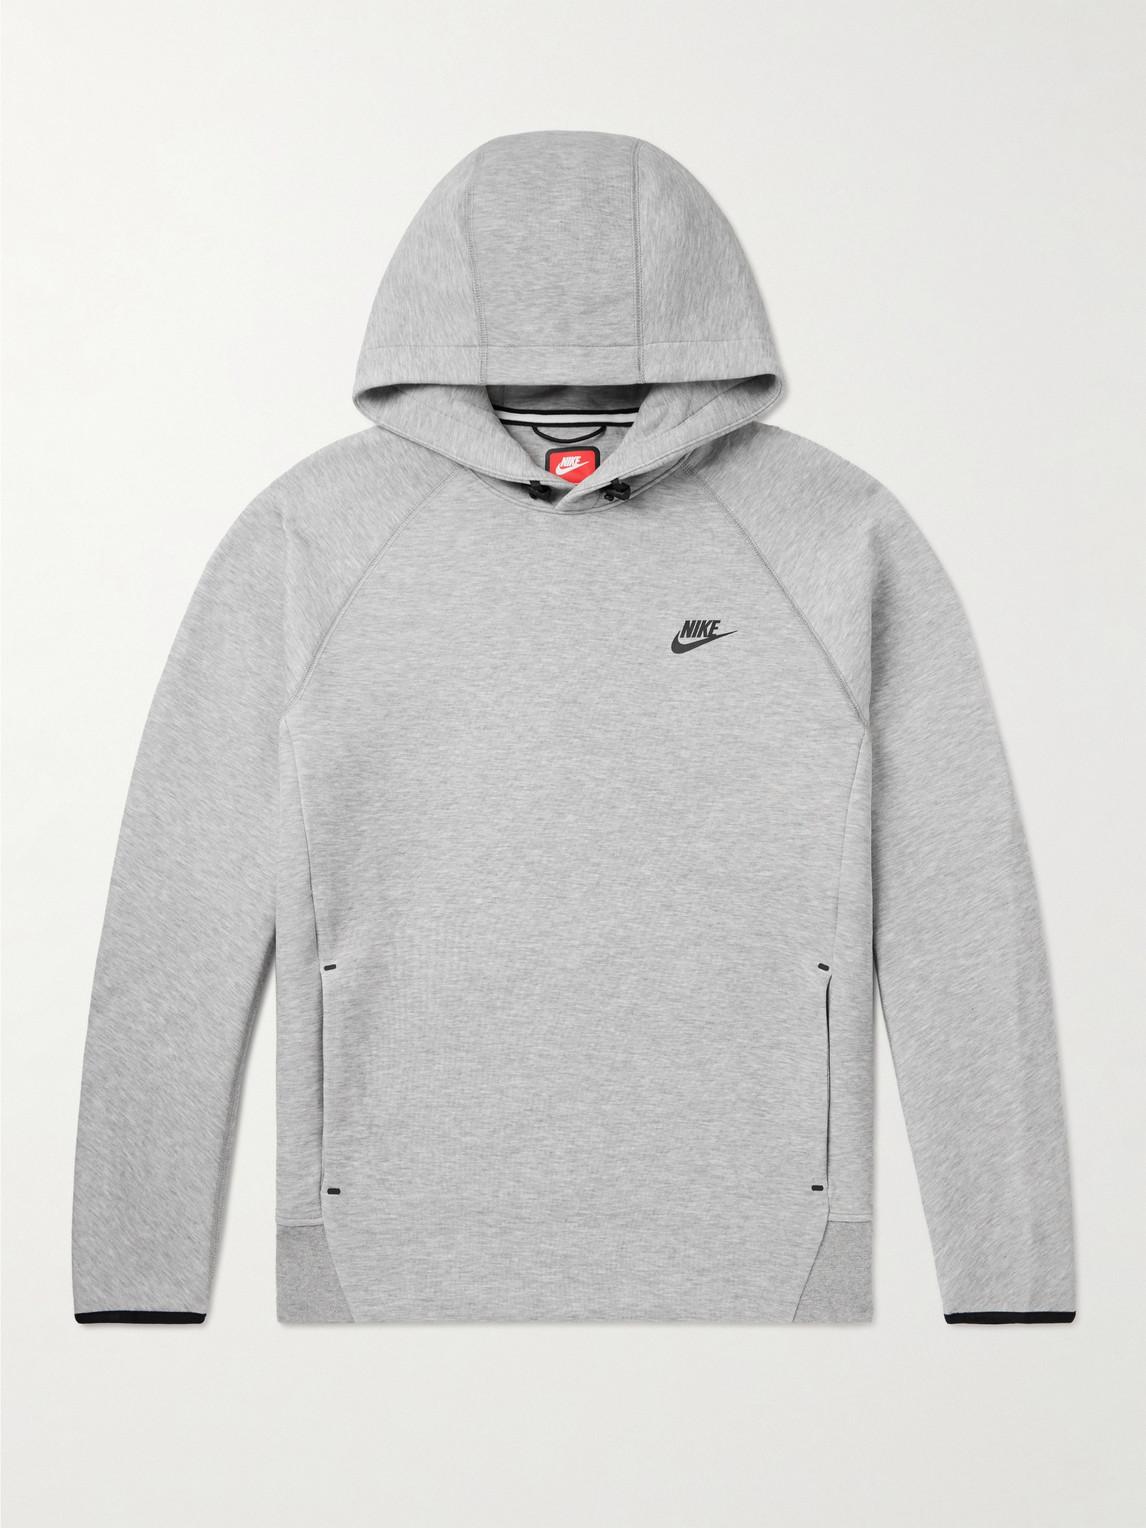 Nike Sportswear Tech Fleece Pullover Hoodie in Grey for Men